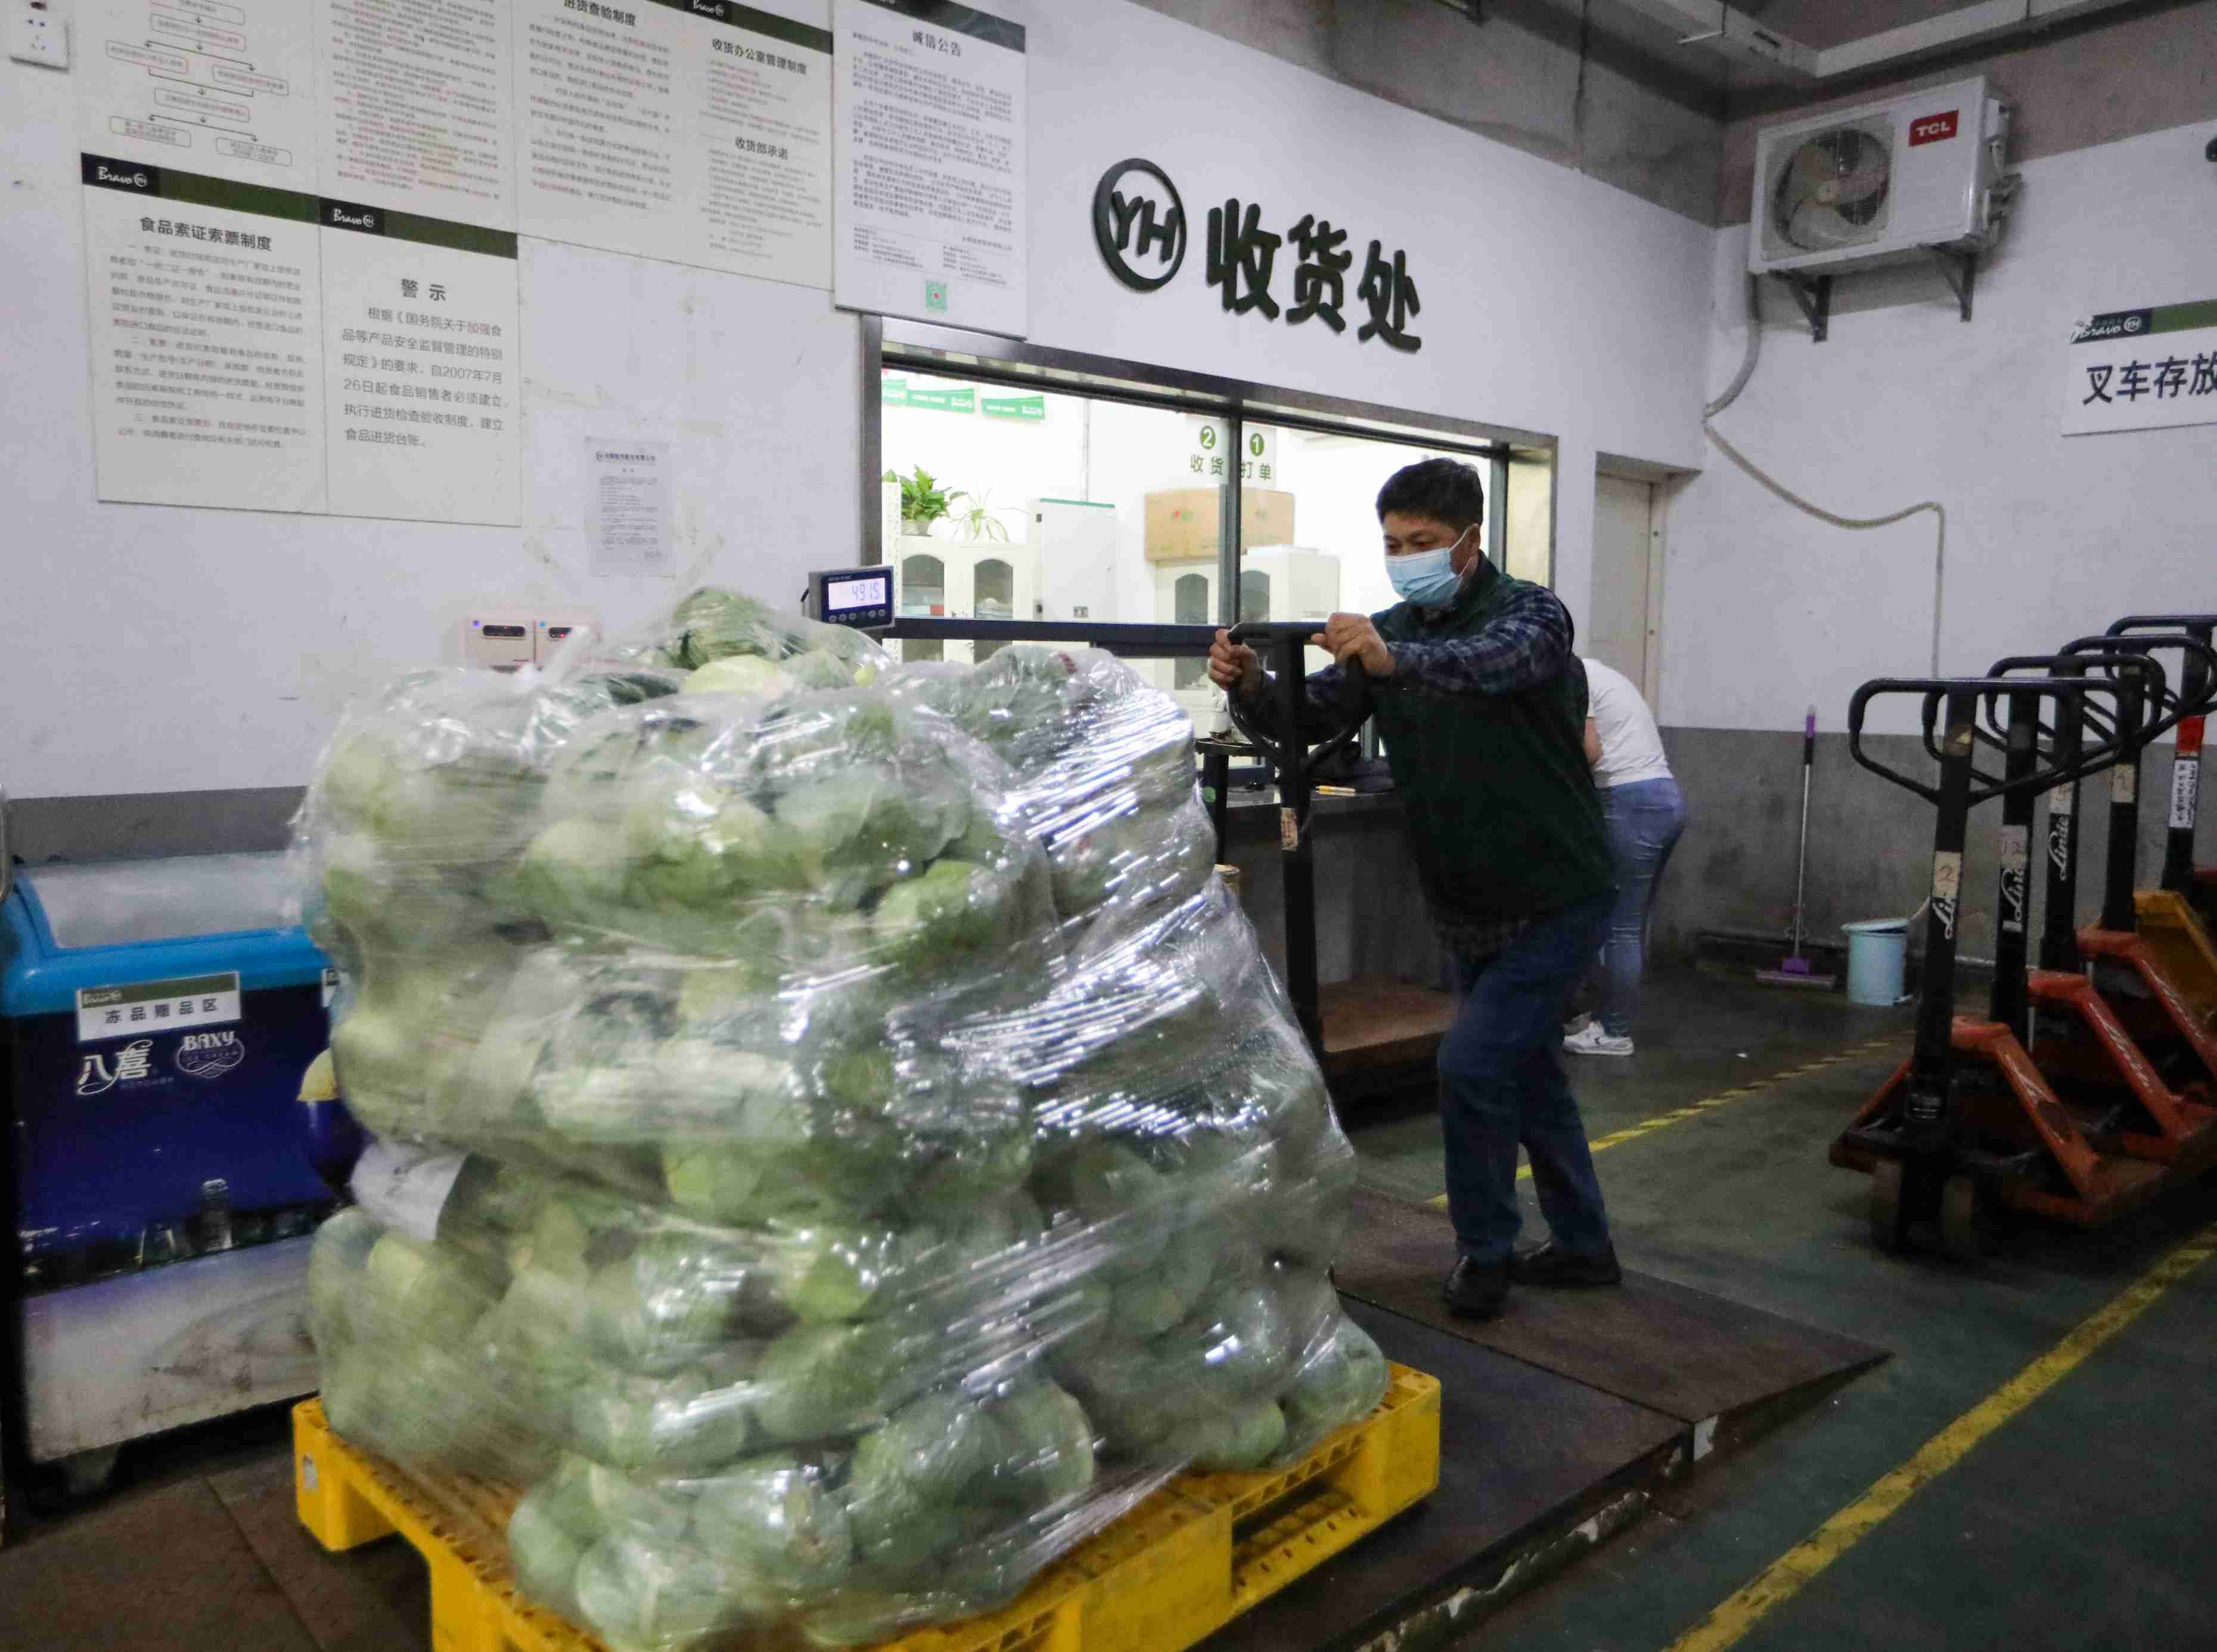 永辉超市工作人员正在转运蔬菜。